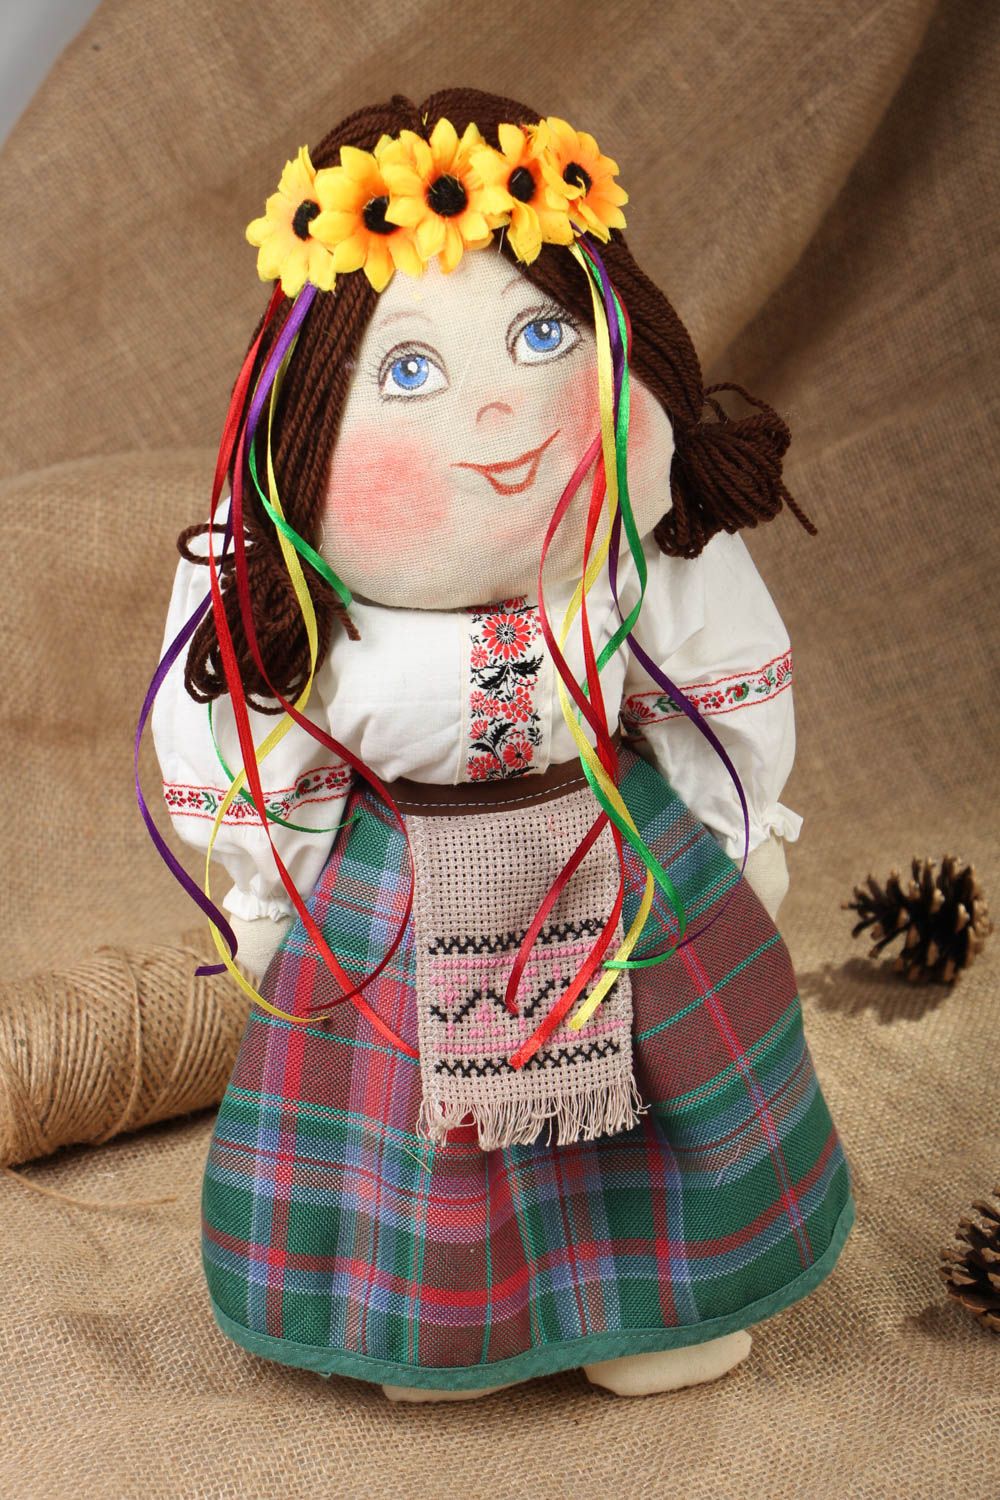 Textil Puppe mit Kranz foto 5